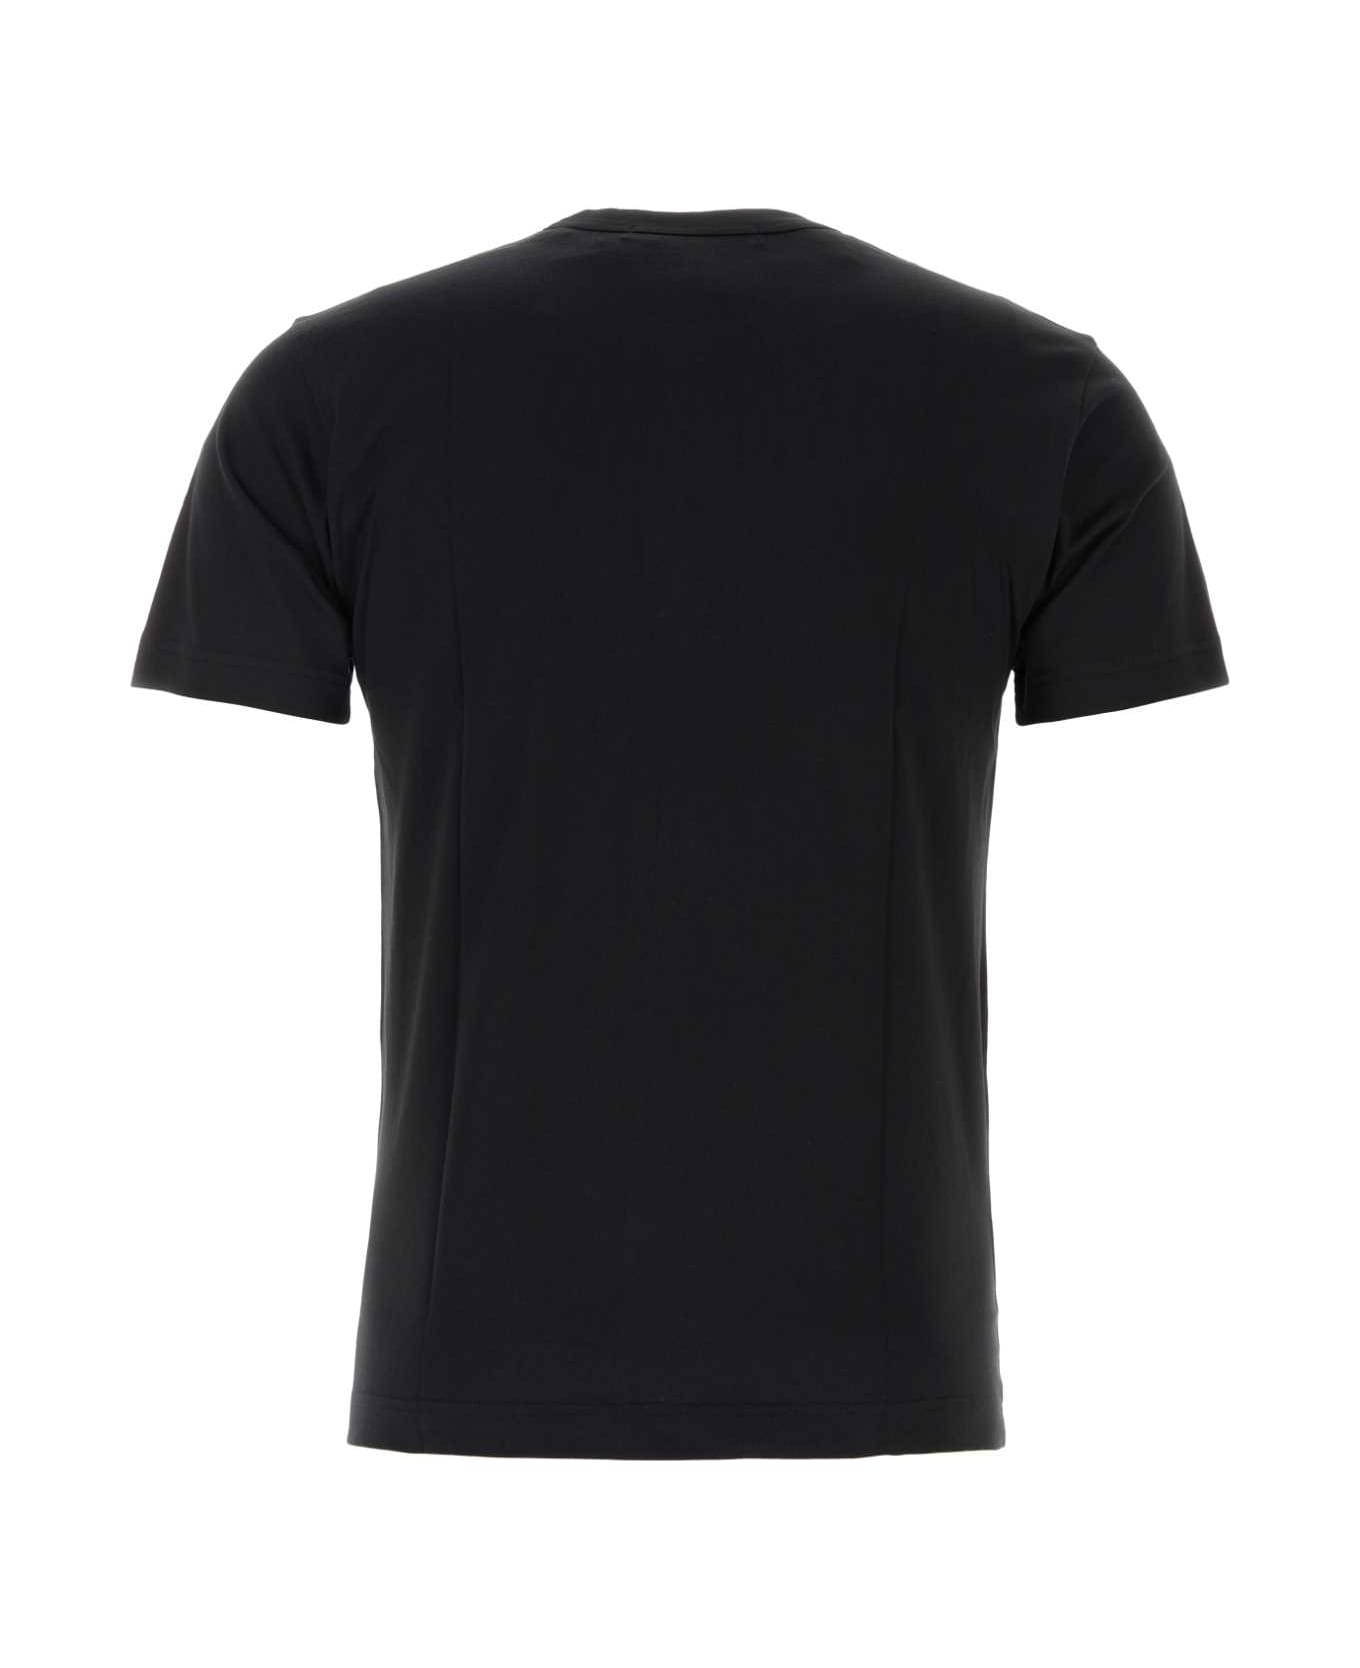 Comme des Garçons Black Cotton T-shirt - BLACK